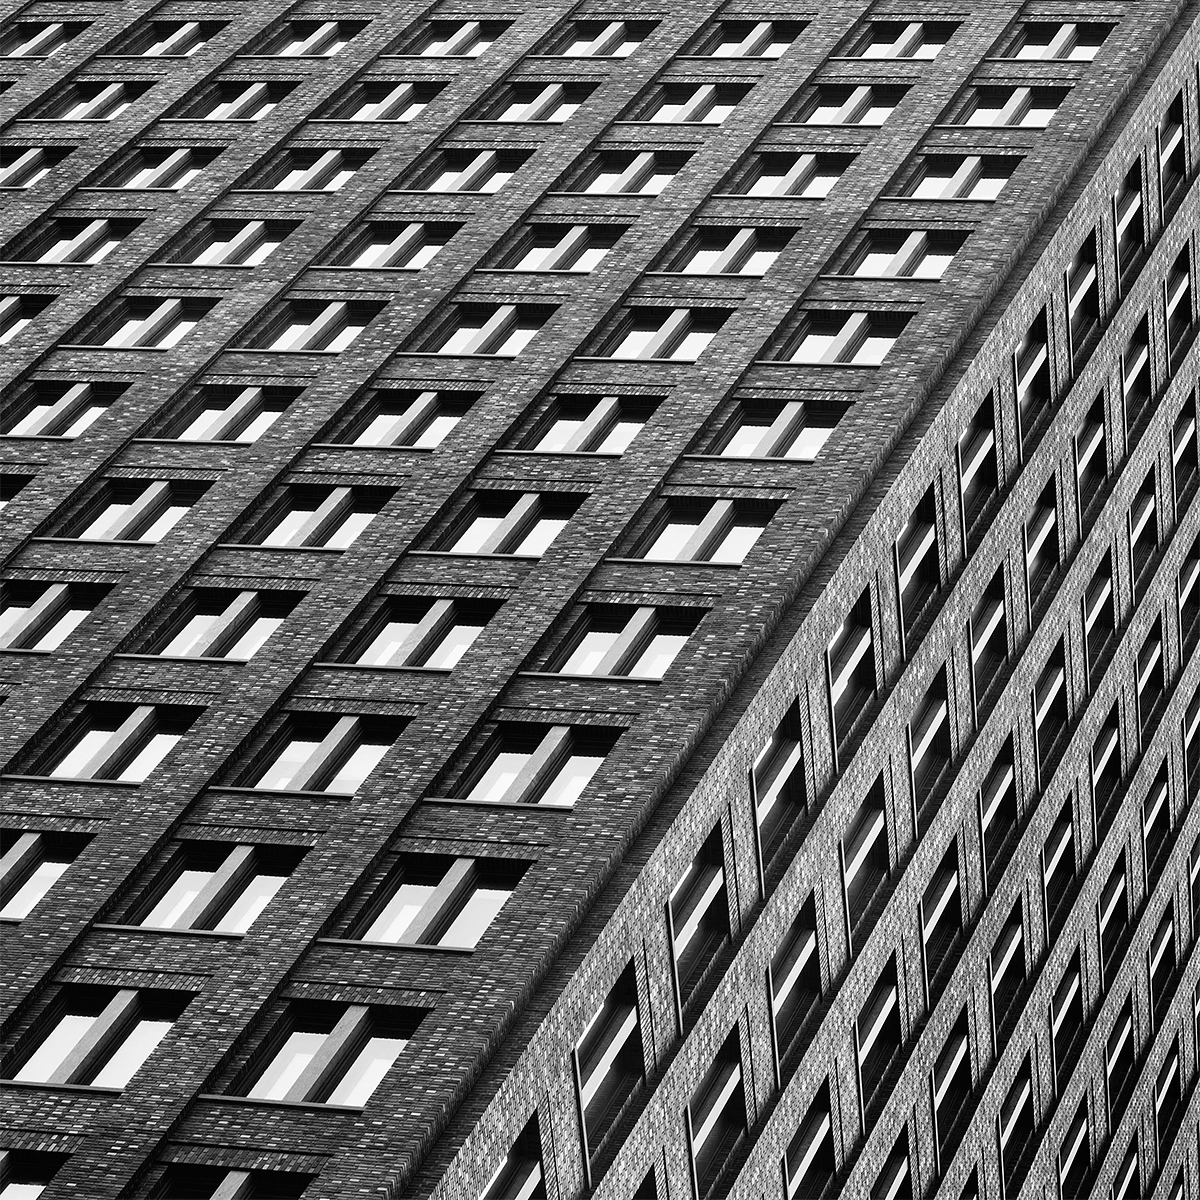 Rotterdam den haag essen exterior Interior Daytimes buildings modern architecture Minimalism structures city night lights Collection